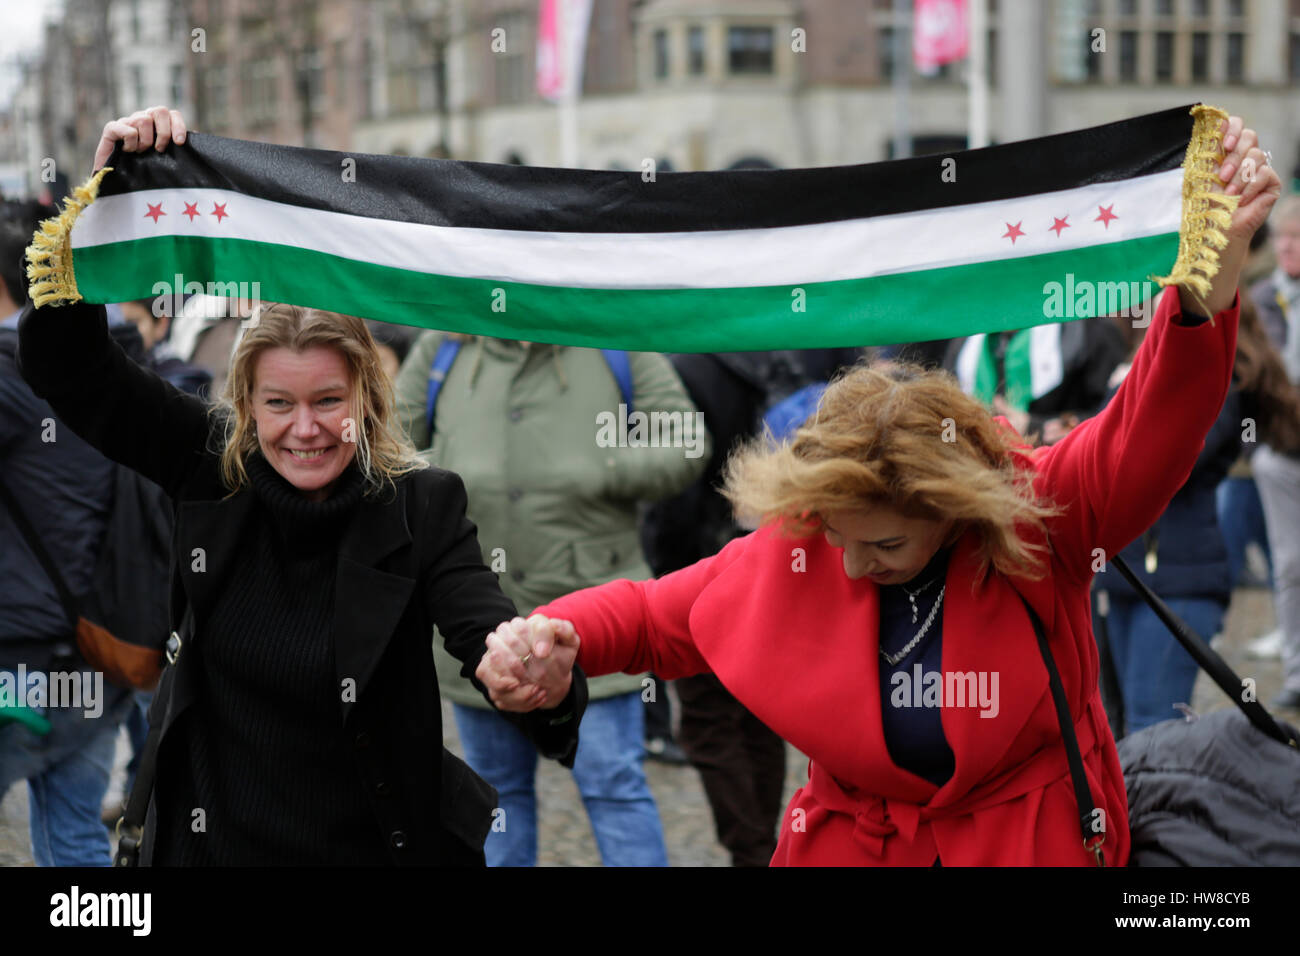 Zwei Frauen tanzen mit einem Schal in den Farben der Flagge Syrien  Unabhängigkeit. Syrer in Amsterdam lebenden feierte den 6. Jahrestag der  Aufstand in Syrien, Opposition zu den laufenden syrischen Bürgerkrieg  führen.